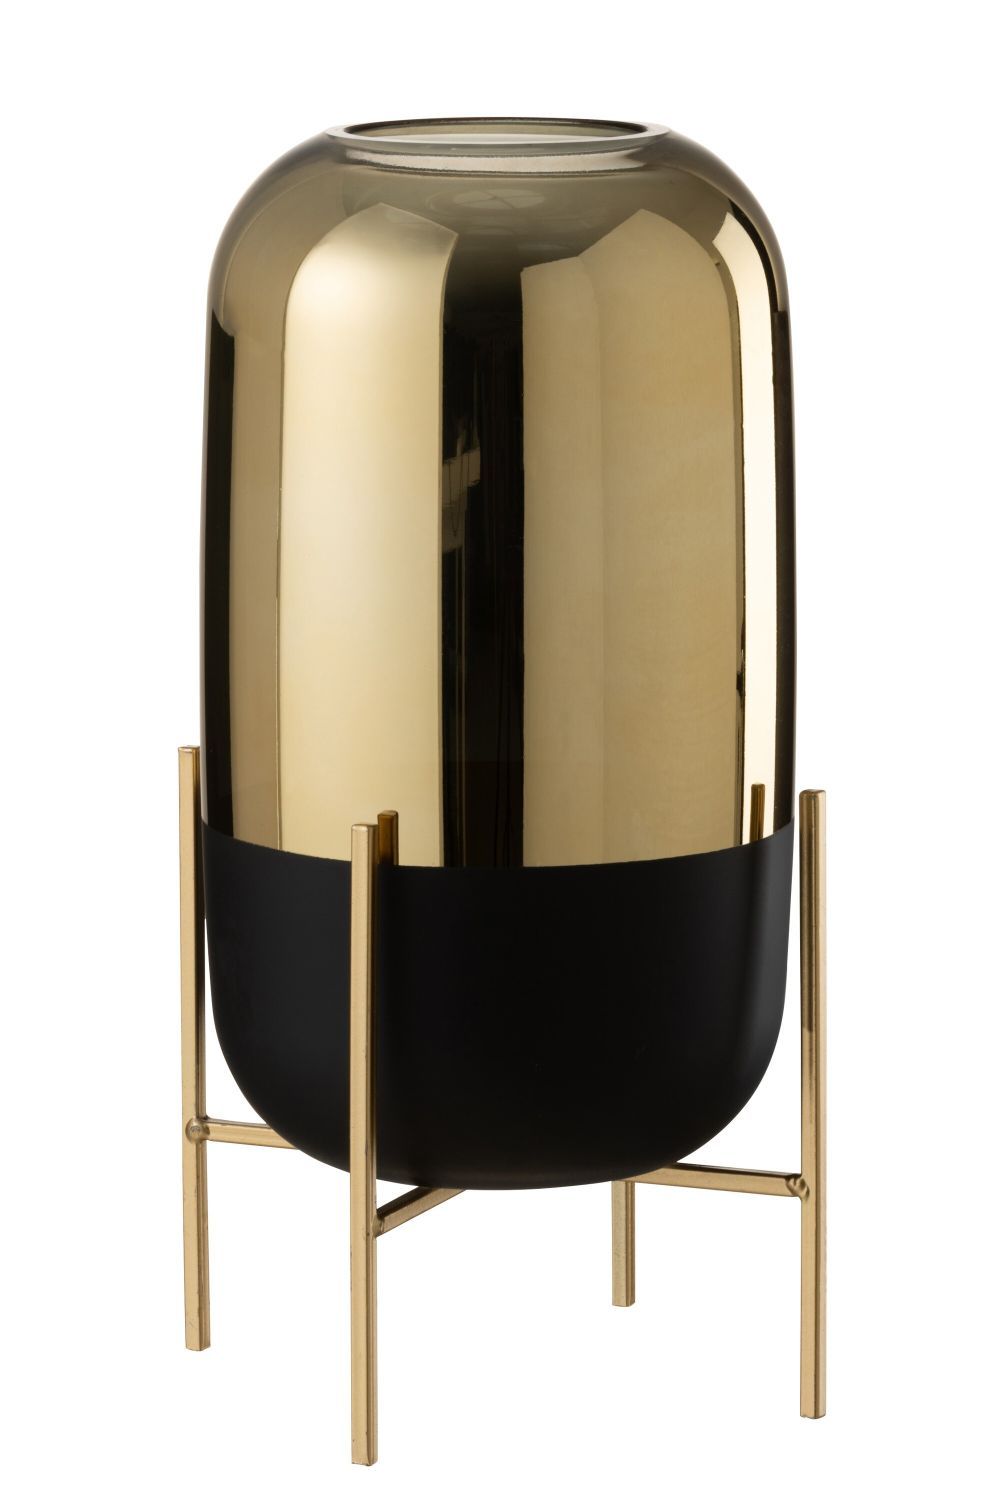 Skleněná černo-zlatá dekorační váza na podstavci - Ø 18*37cm J-Line by Jolipa - LaHome - vintage dekorace